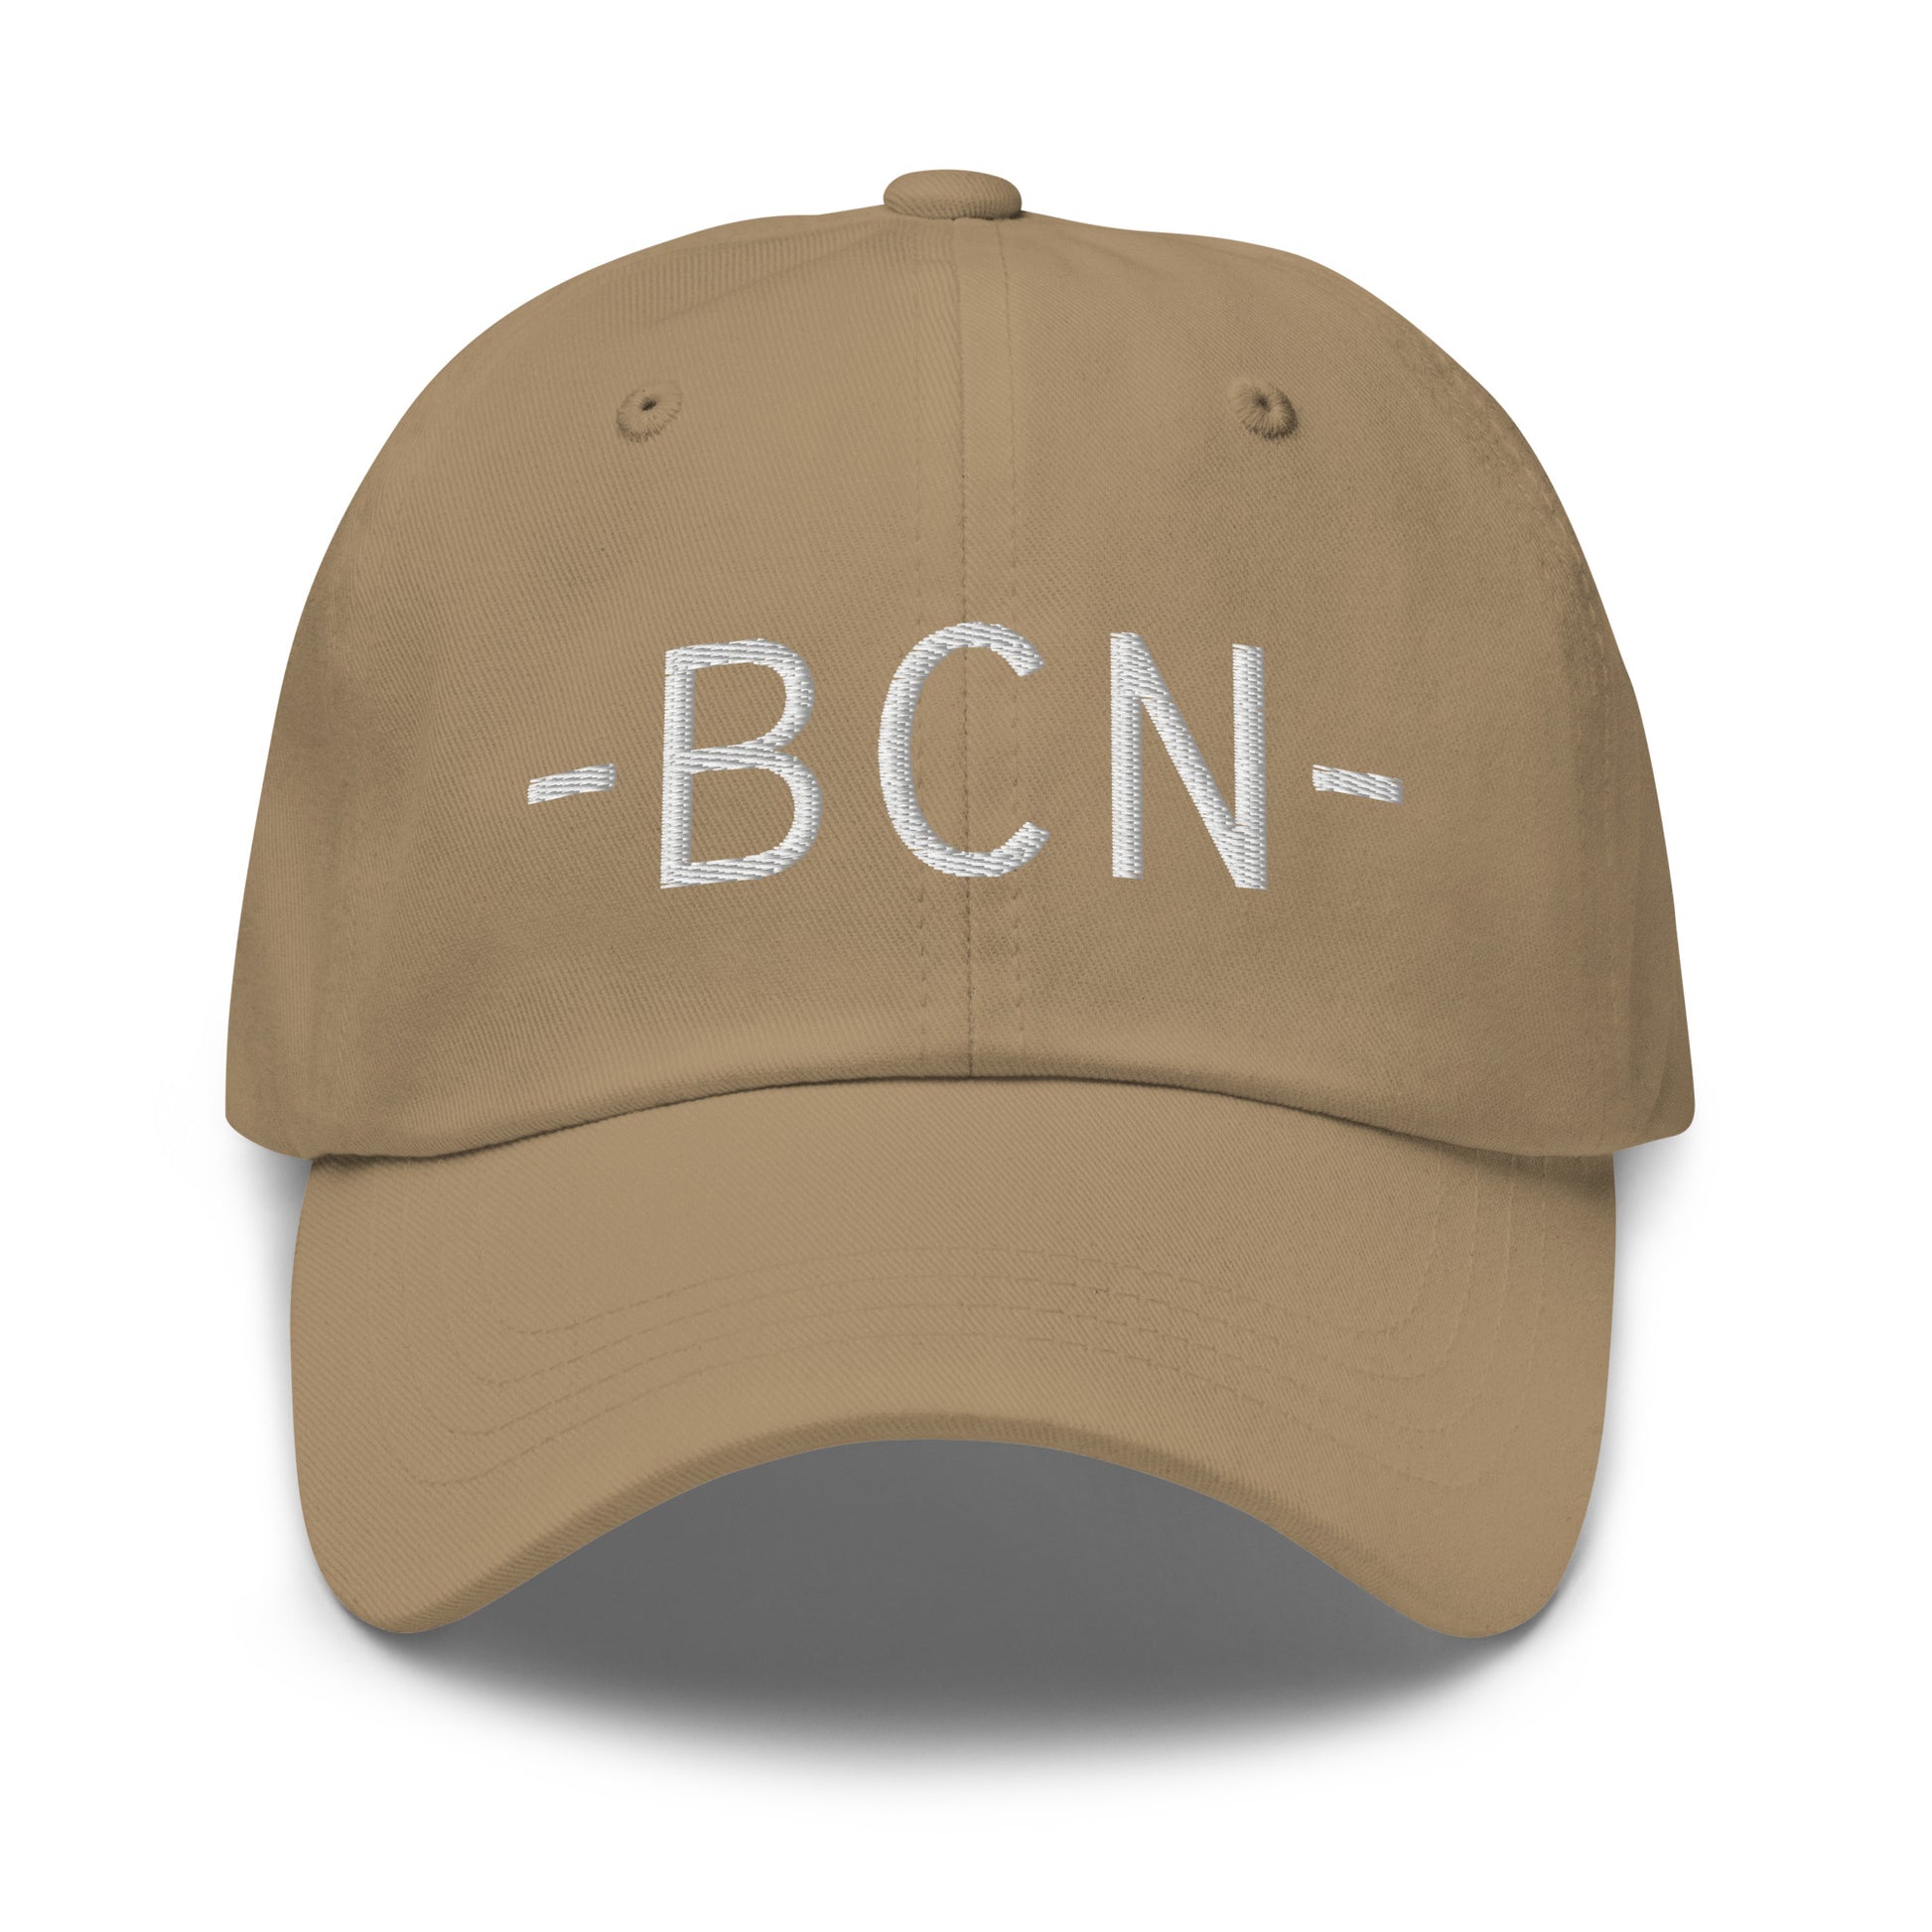 Souvenir Baseball Cap - White • BCN Barcelona • YHM Designs - Image 21